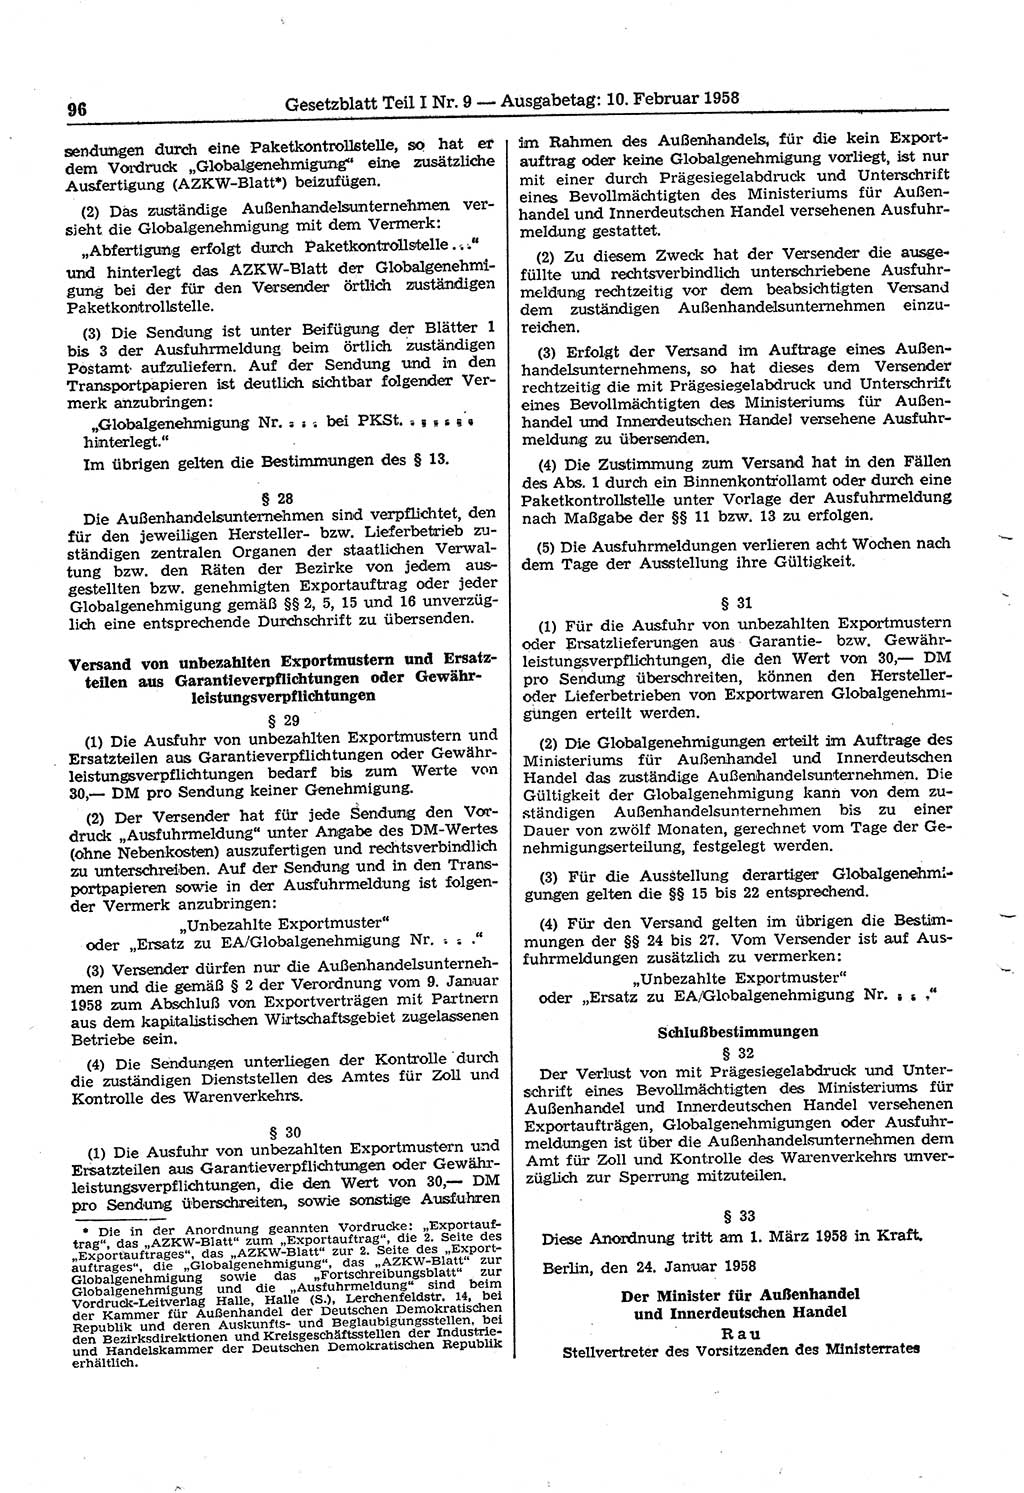 Gesetzblatt (GBl.) der Deutschen Demokratischen Republik (DDR) Teil Ⅰ 1958, Seite 96 (GBl. DDR Ⅰ 1958, S. 96)